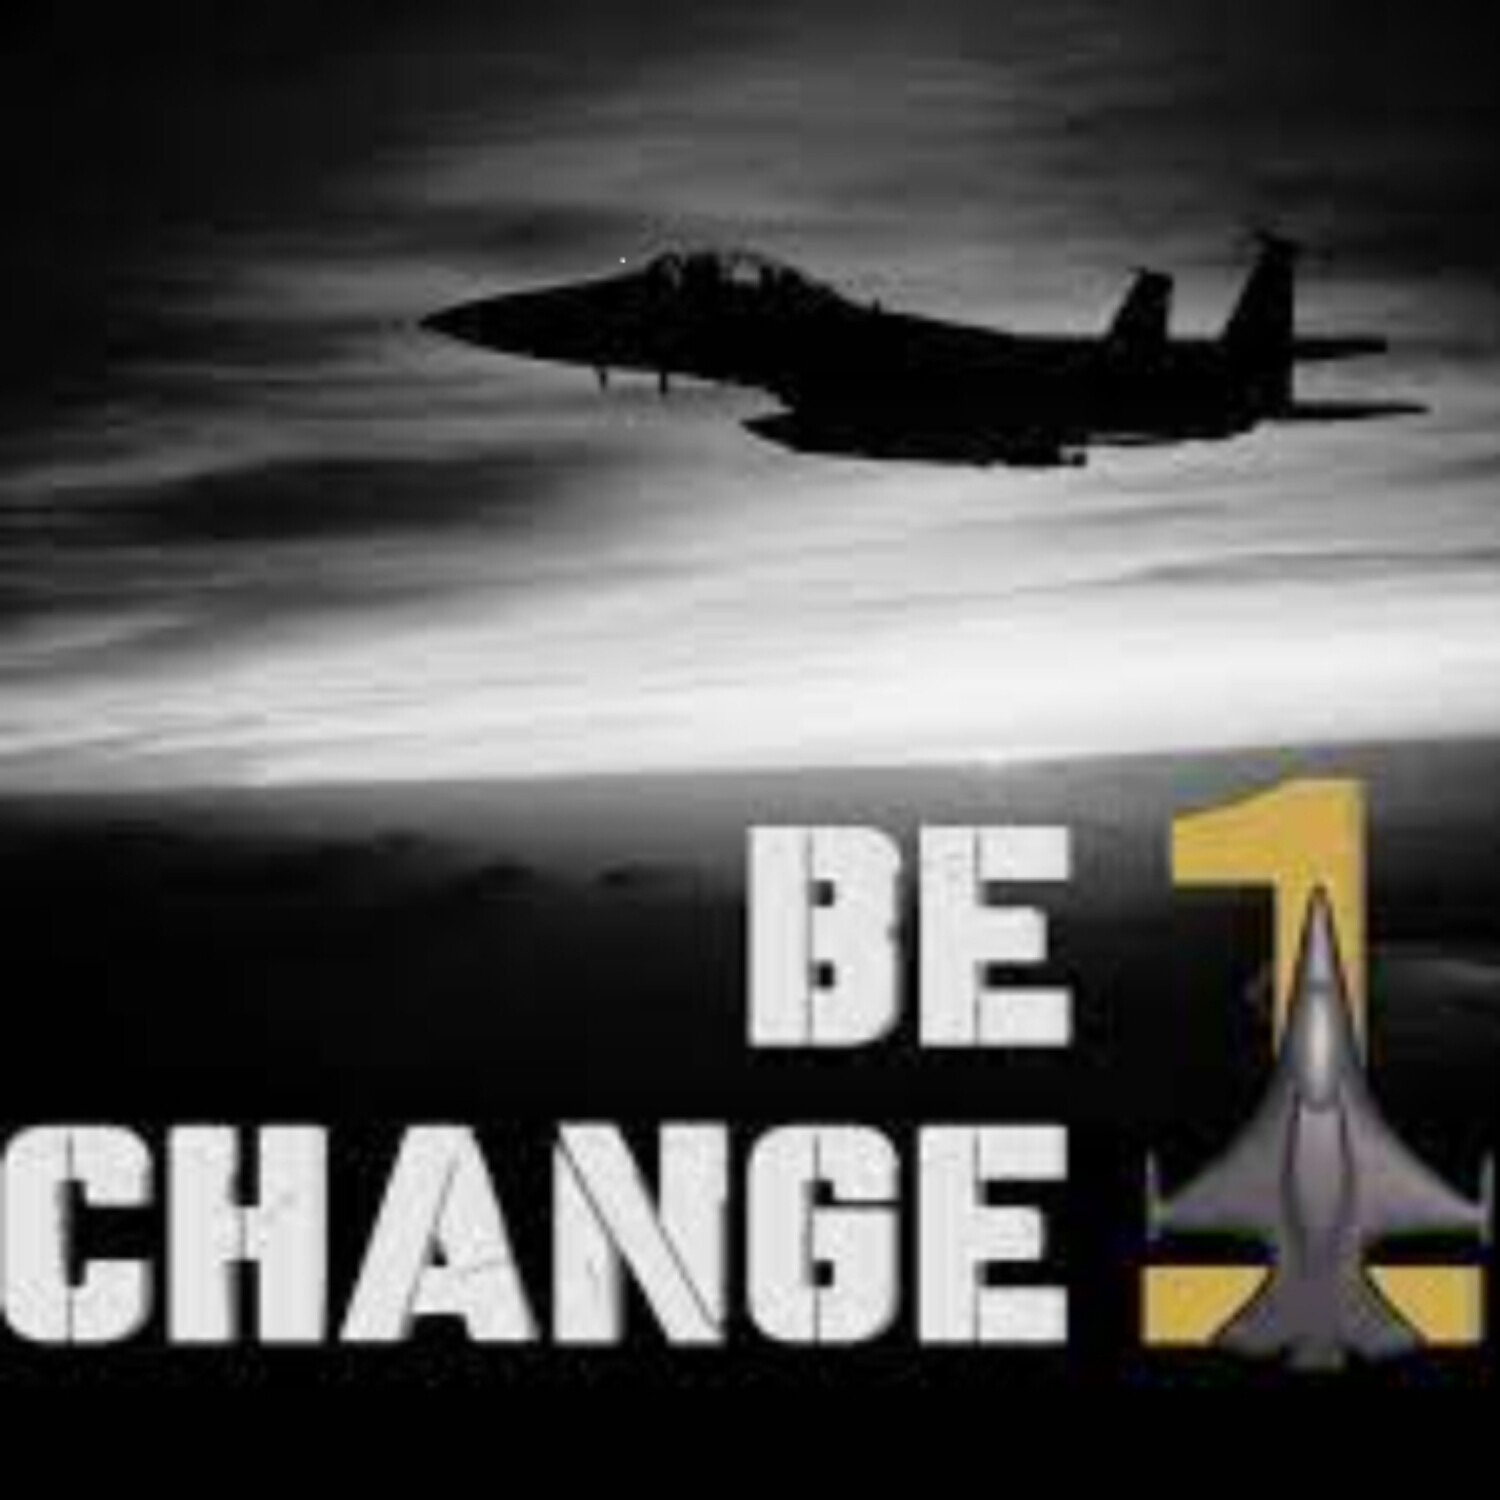 6. Be the Change! - Top Gun Maverick